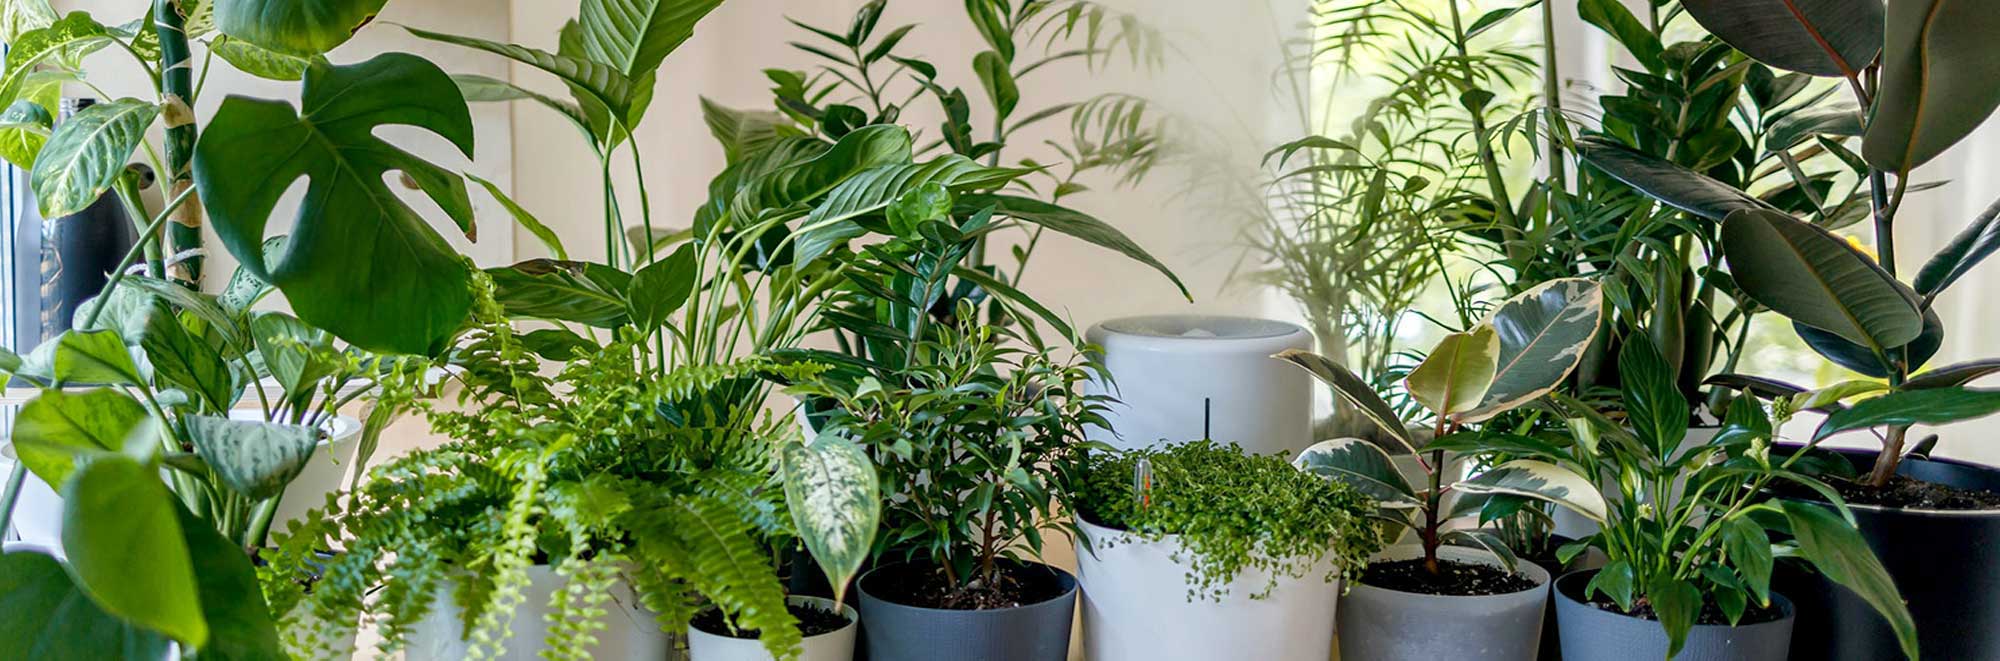 Indoor Gardening and Houseplants Website: